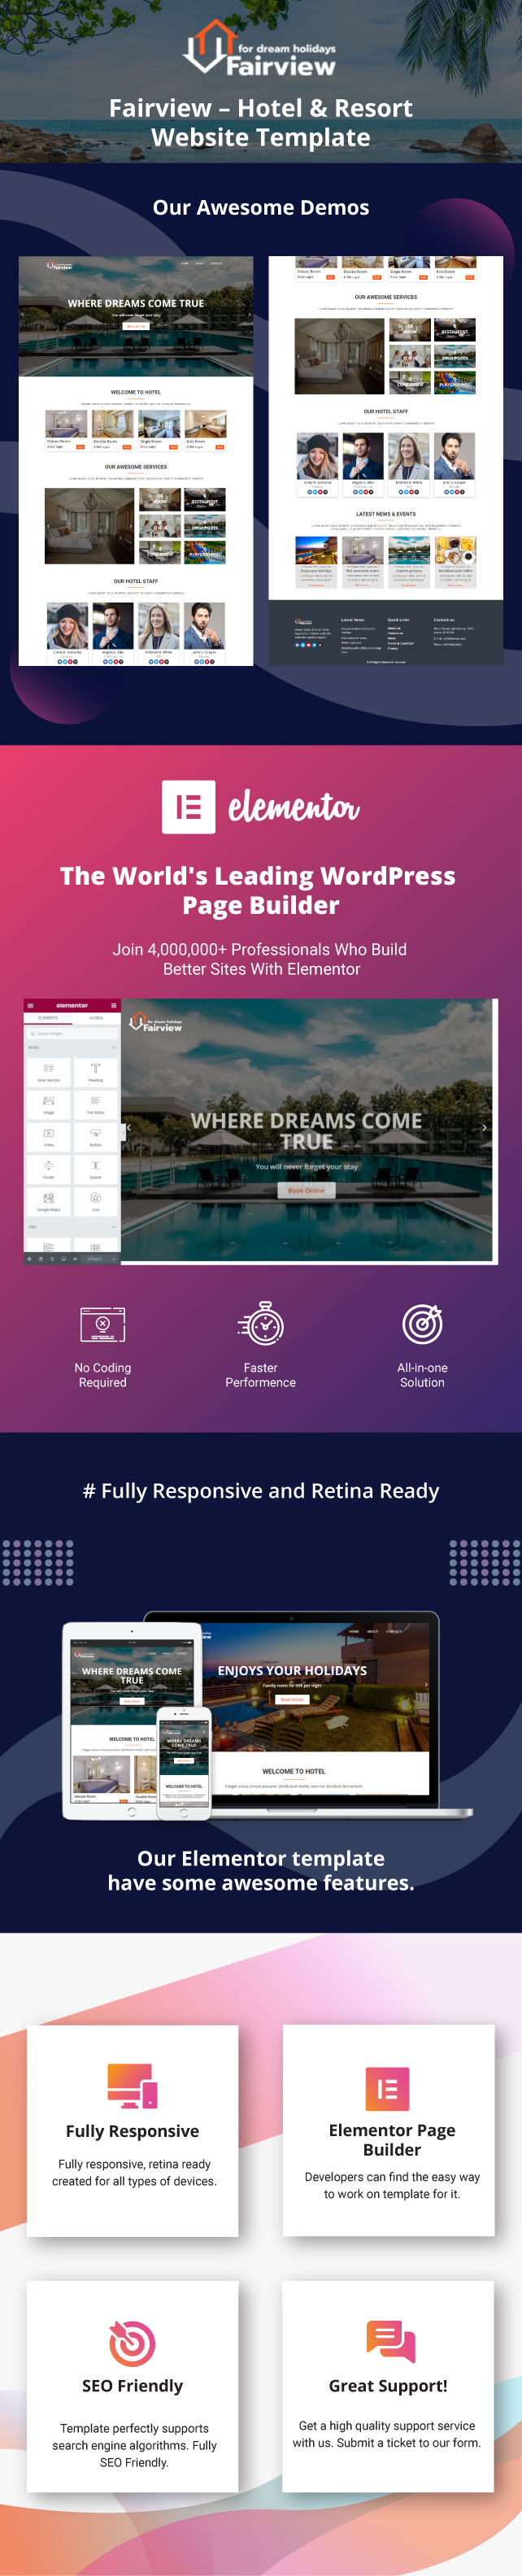 fairview-hotel-resort-website-template